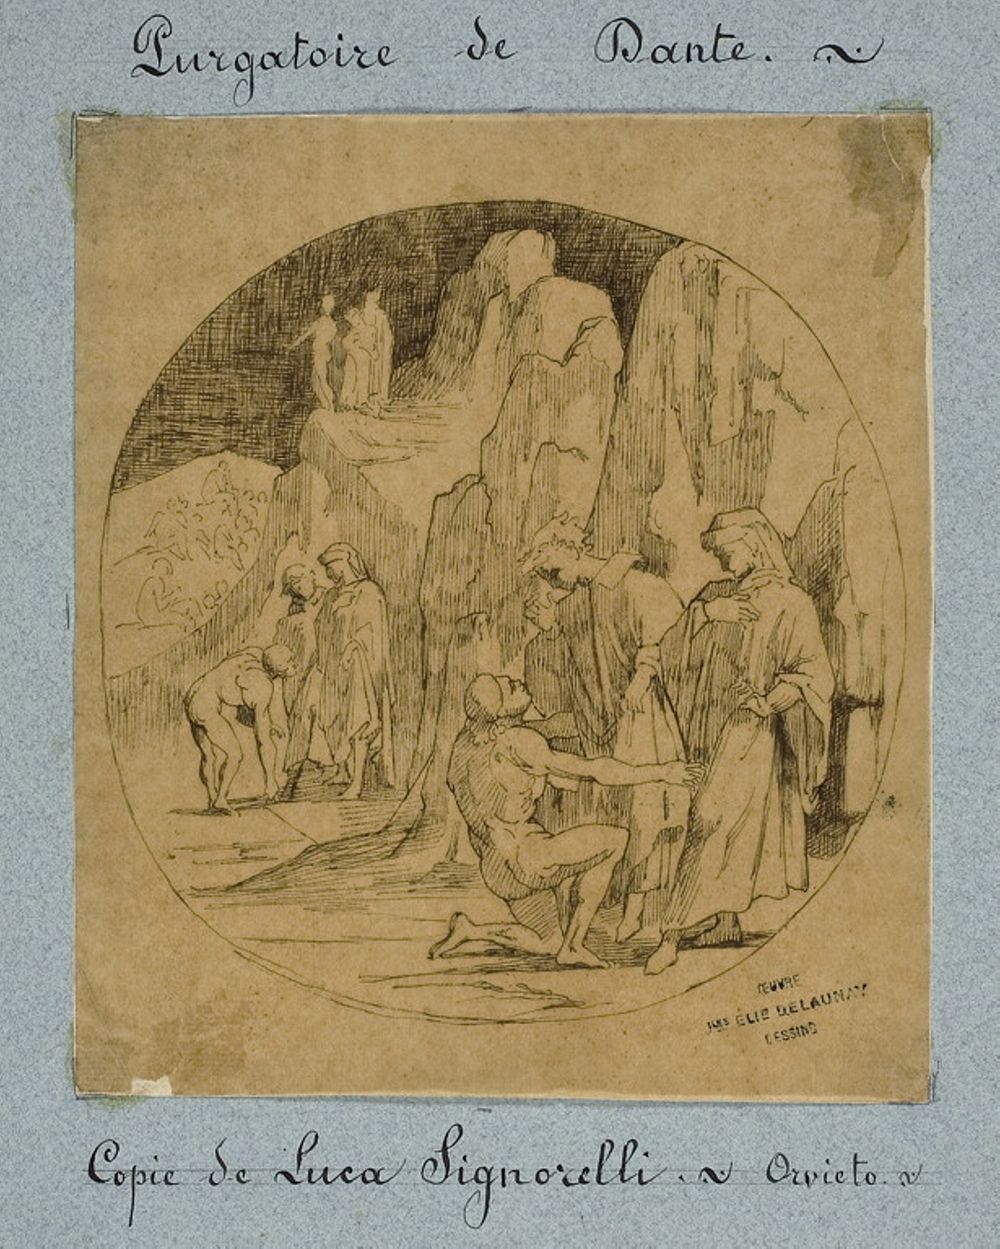 Dante's Purgatory by Jules-Élie Delaunay